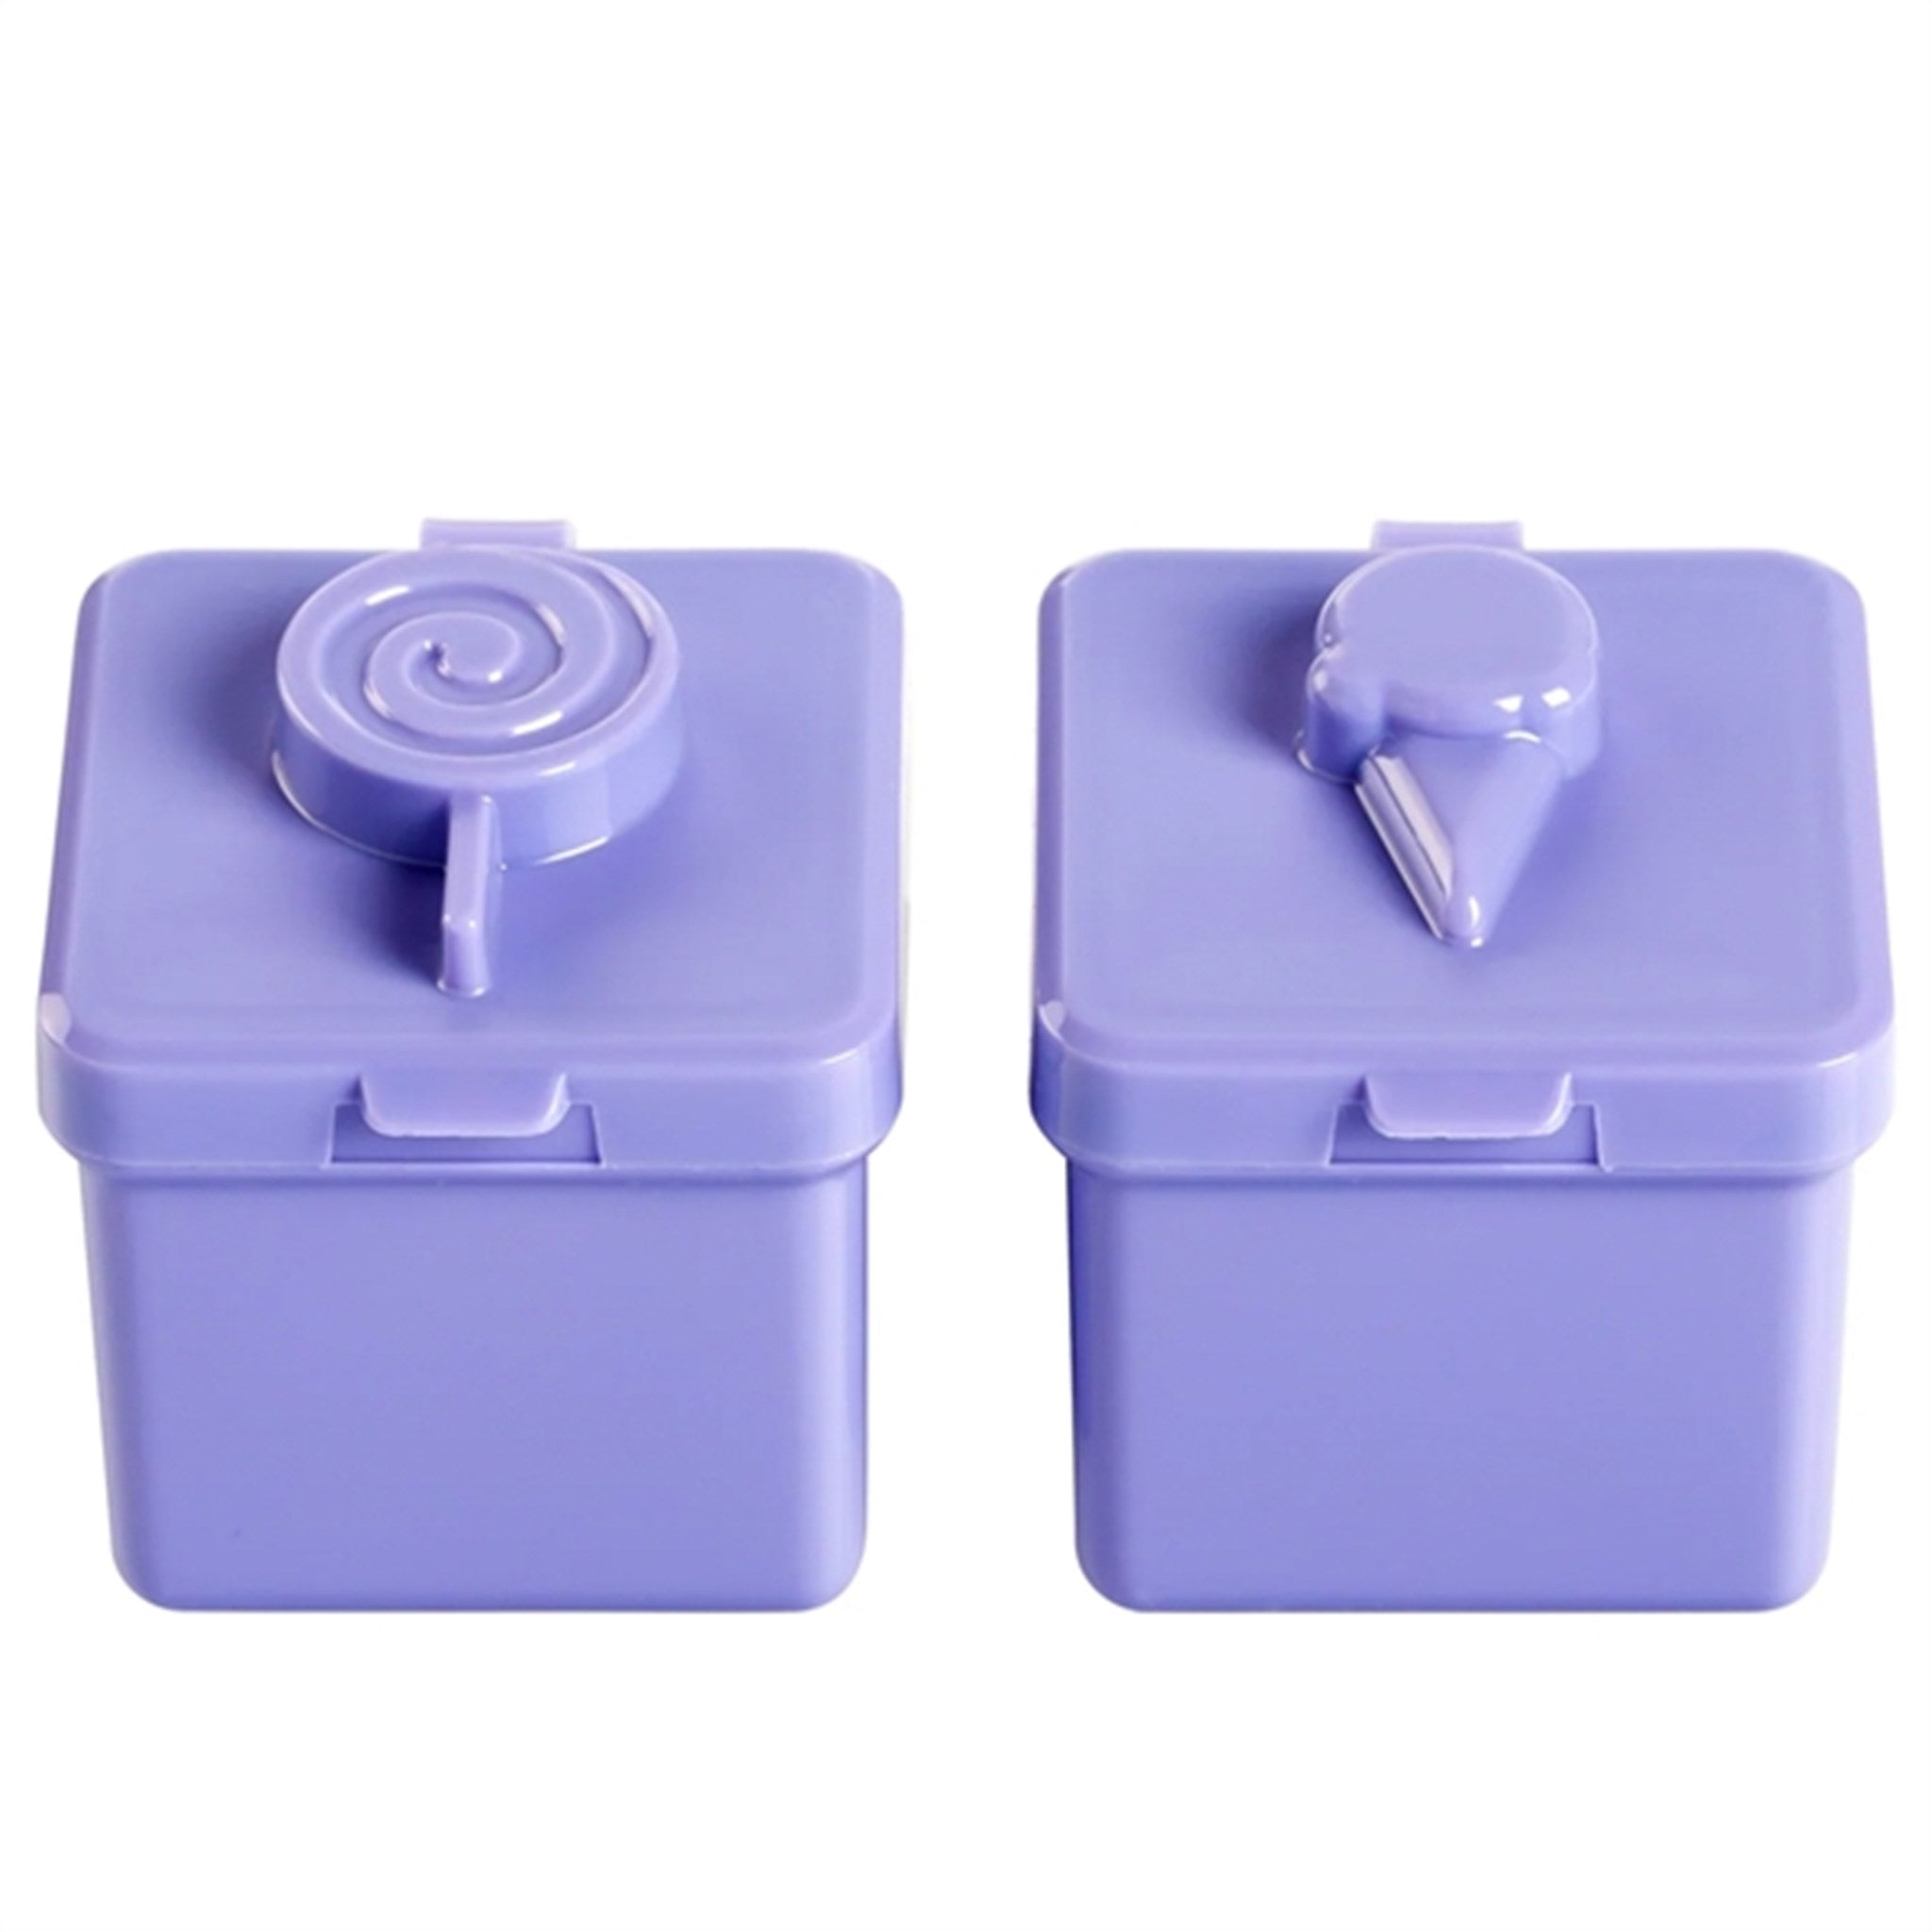 Little Lunch Box Co Bento Surprise Box Purple Sweets